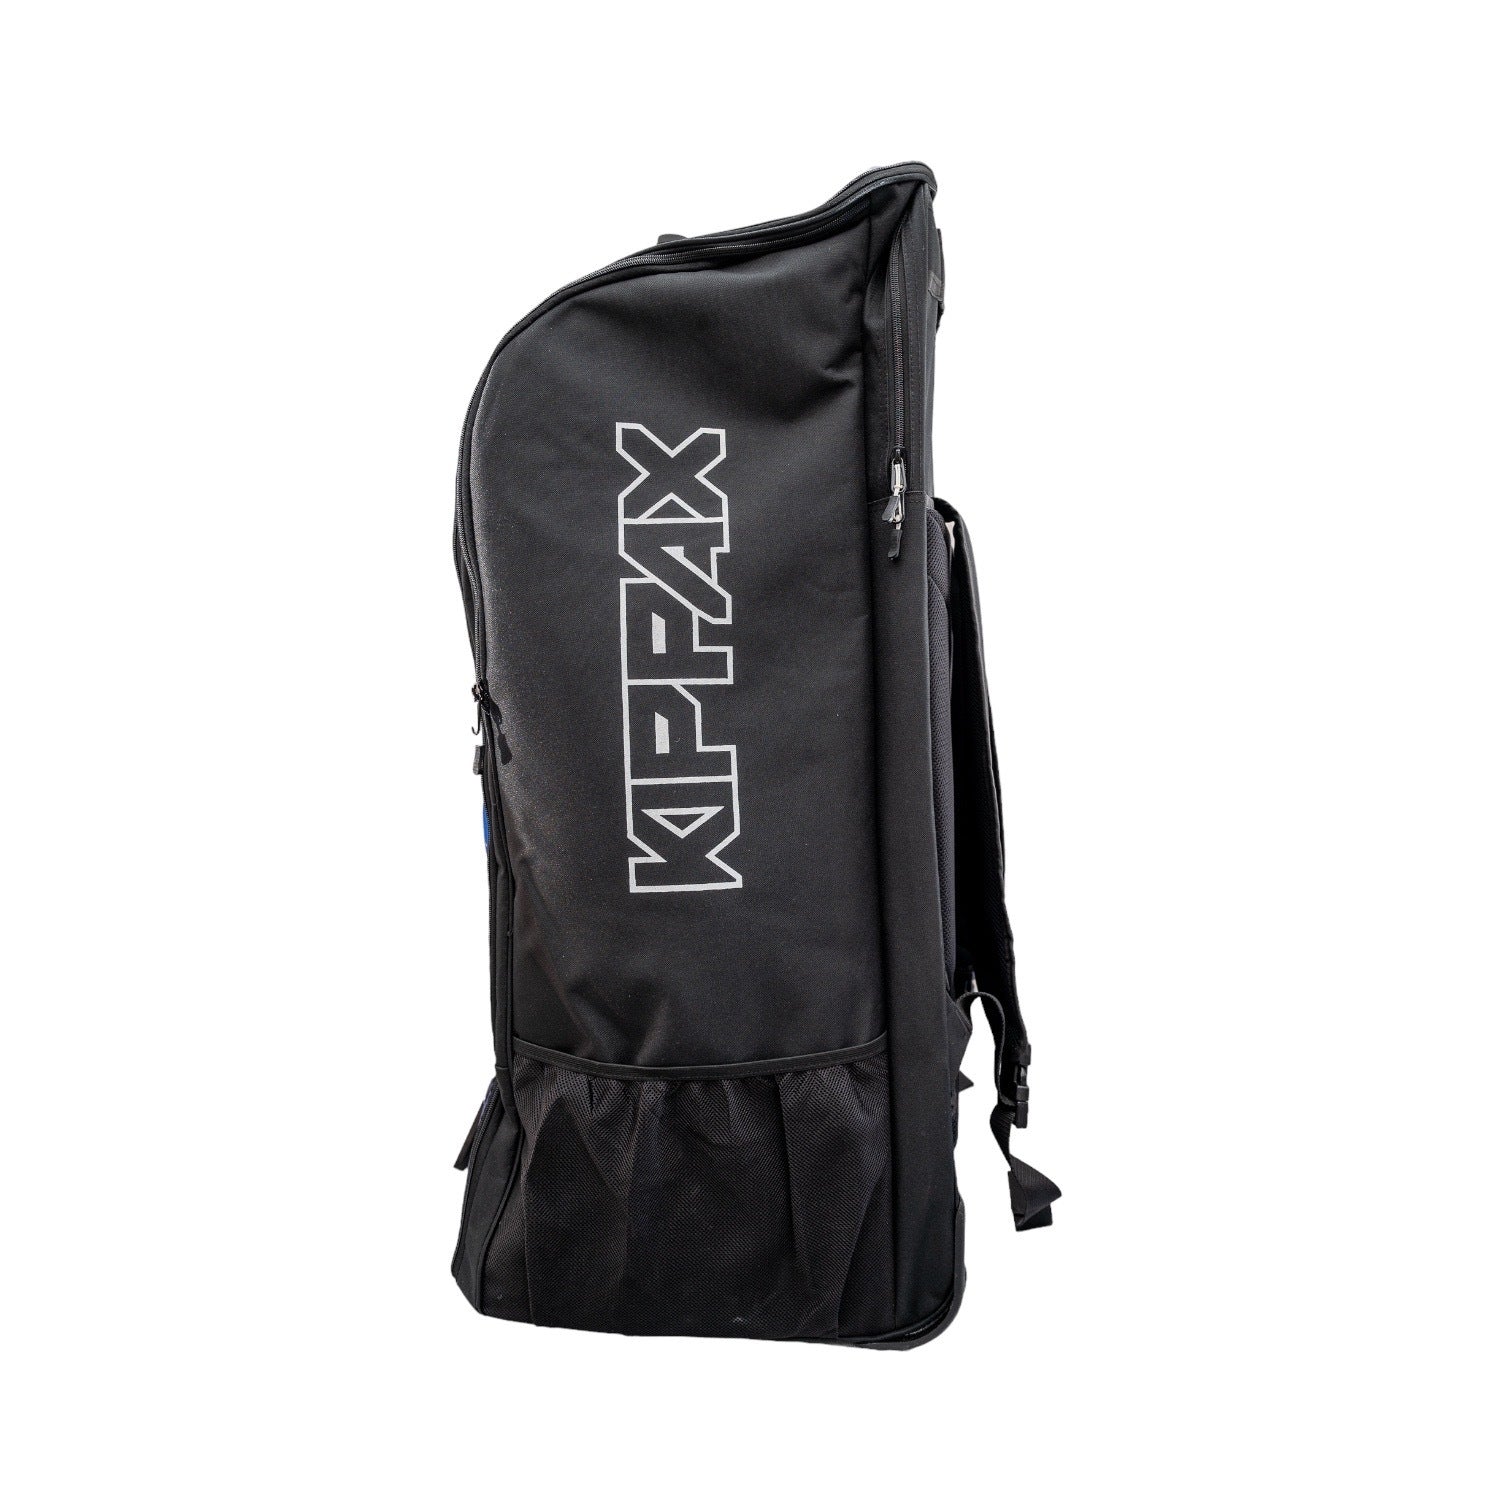 Kippax Duffle Bag